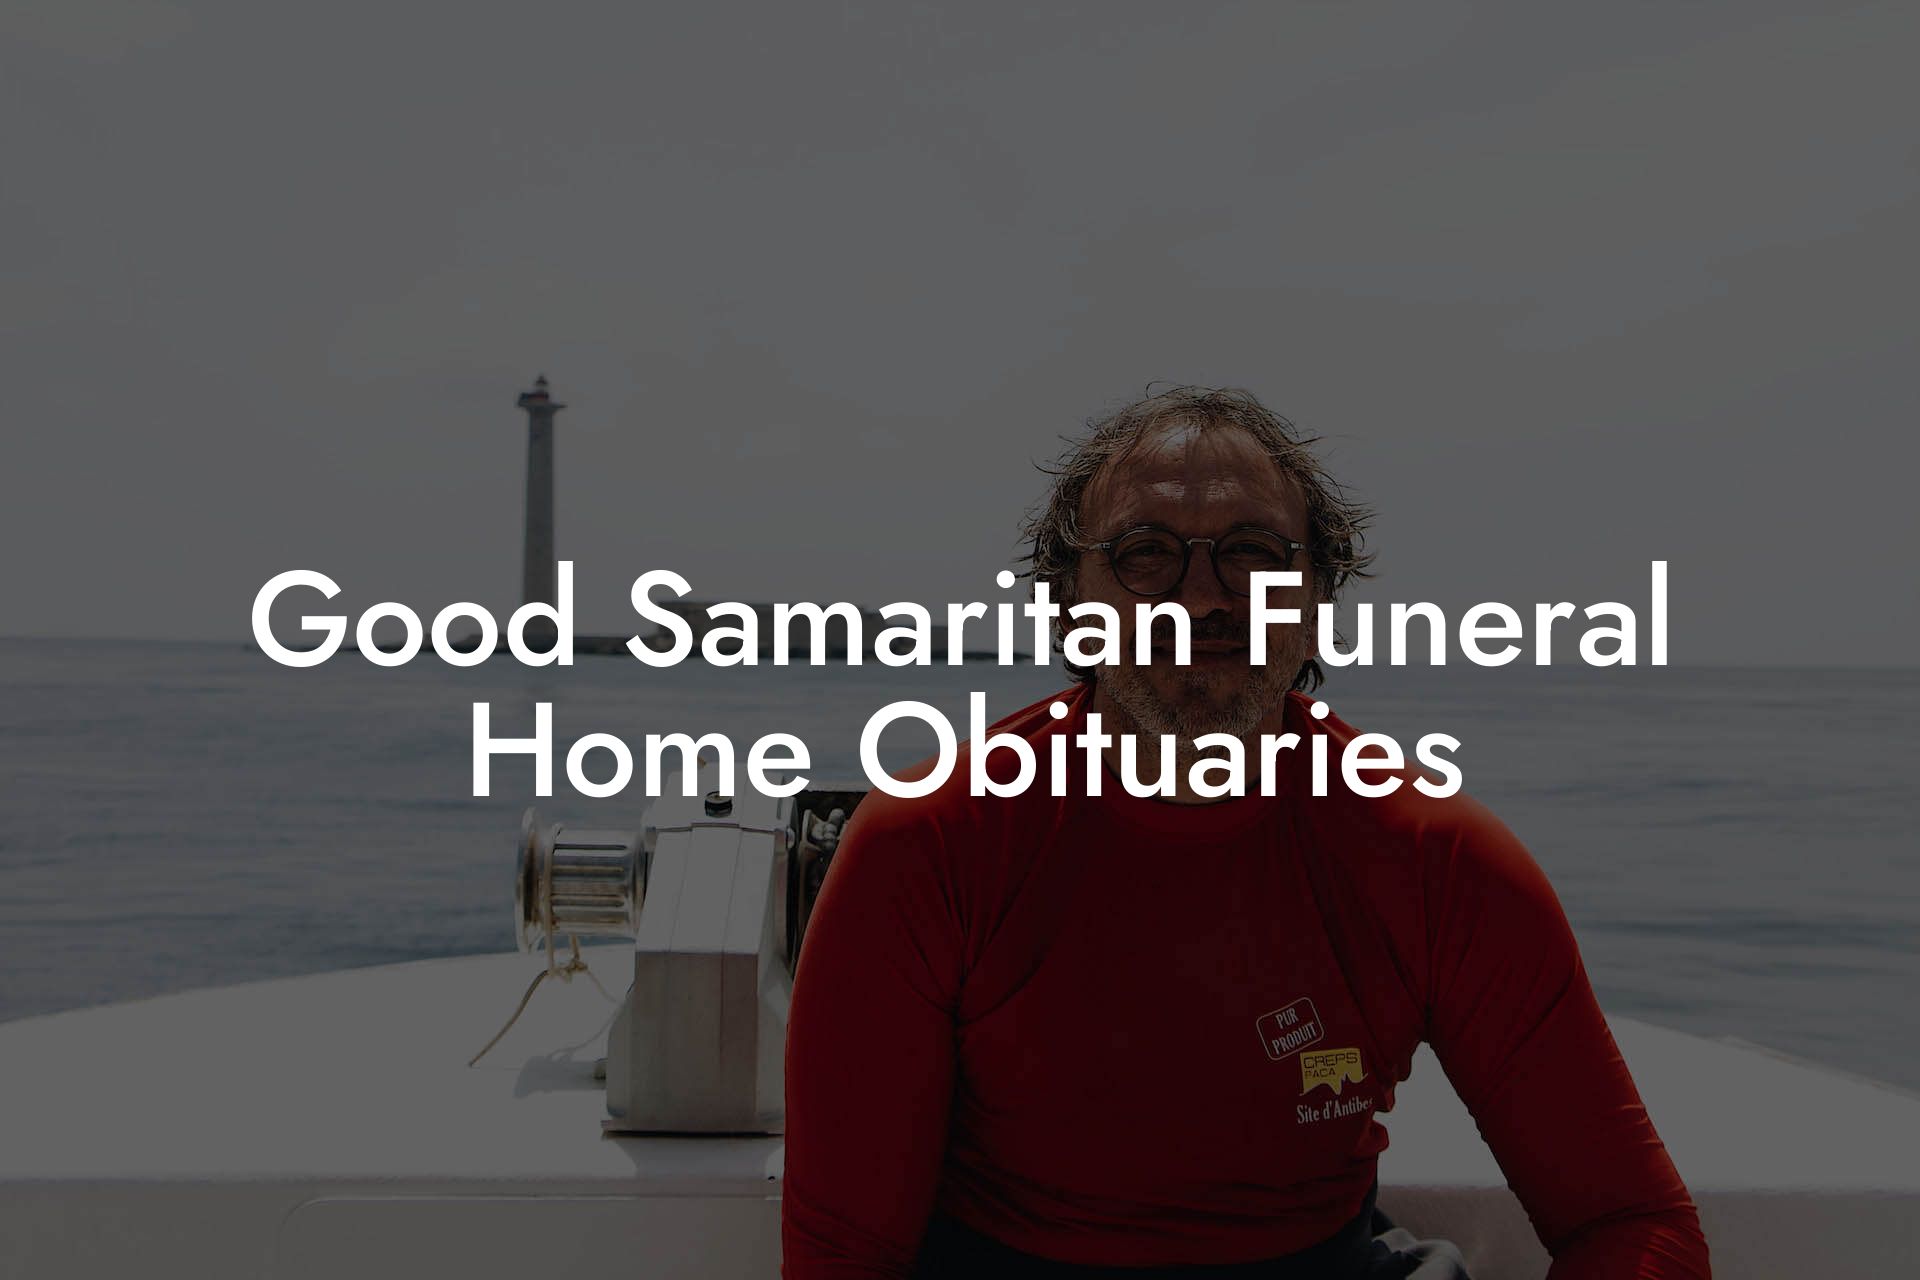 Good Samaritan Funeral Home Obituaries